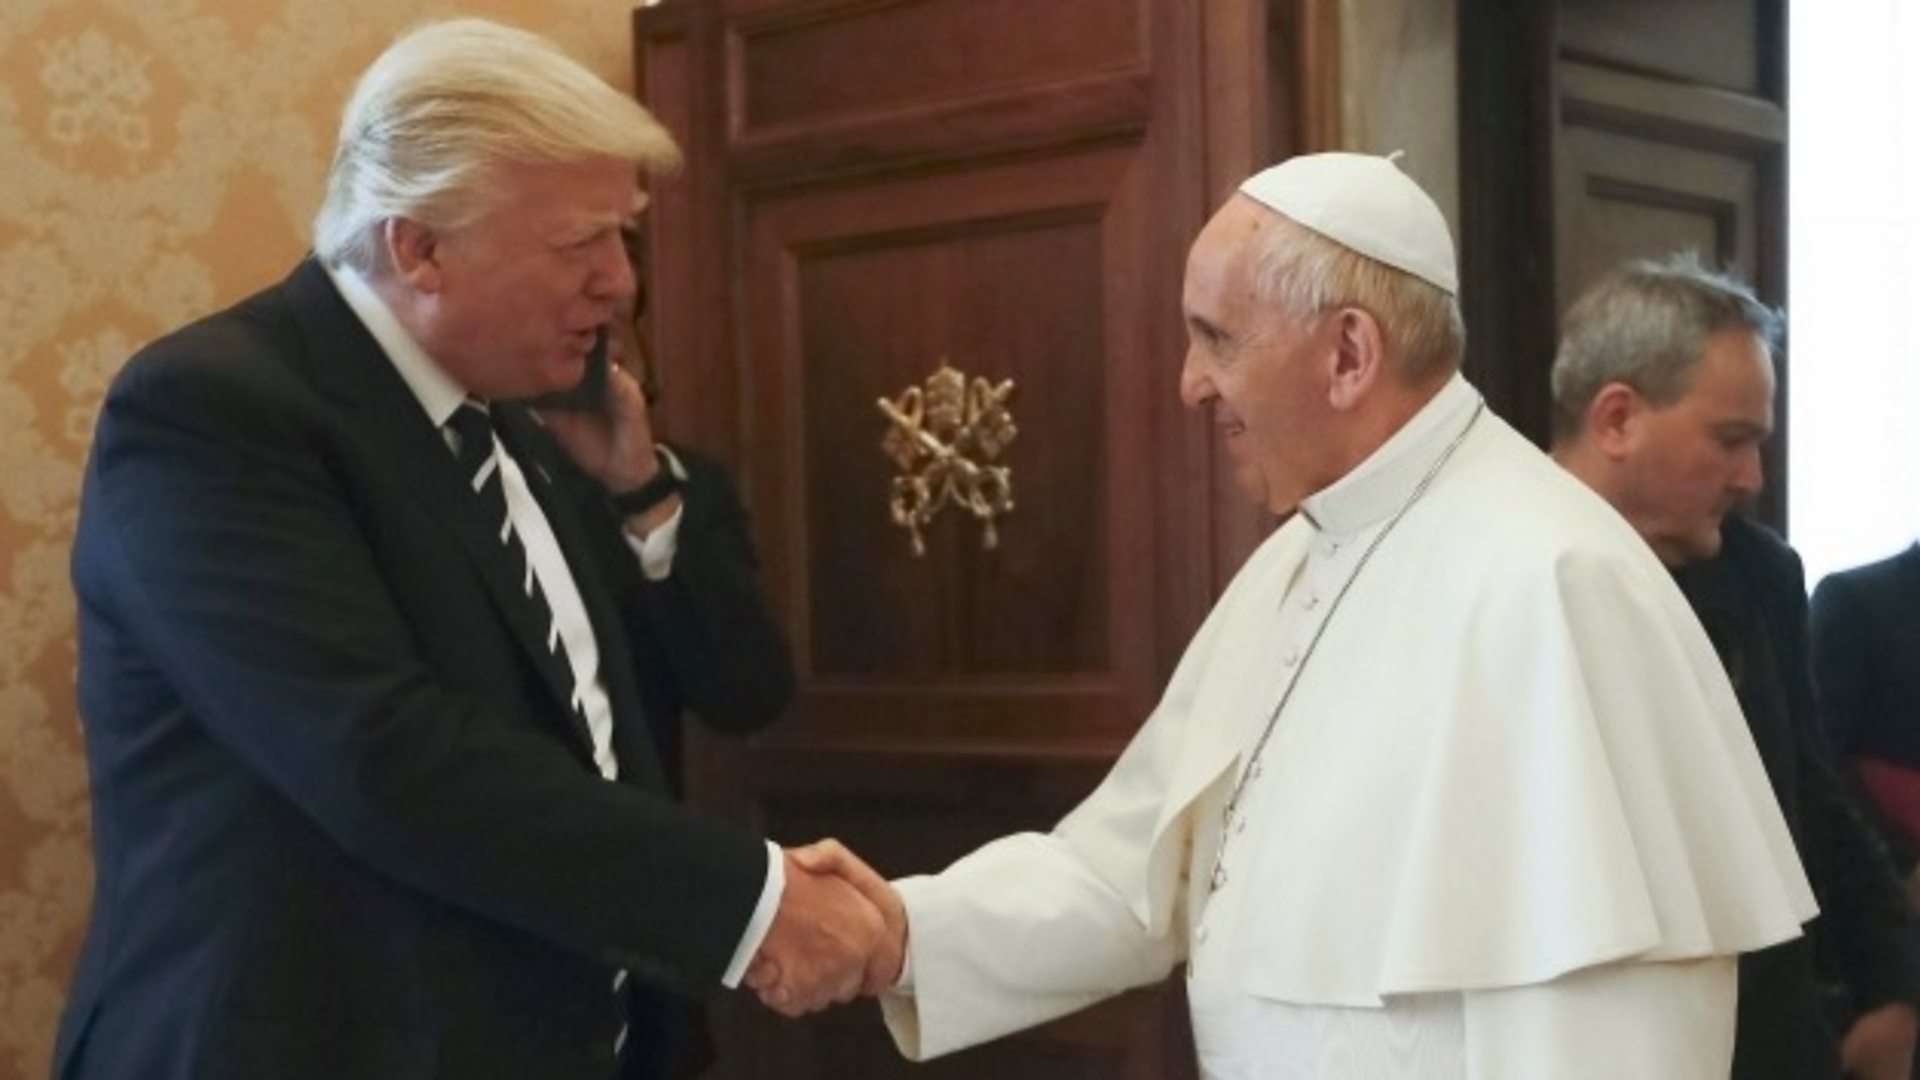 Trump Pope in Rome - BBC News